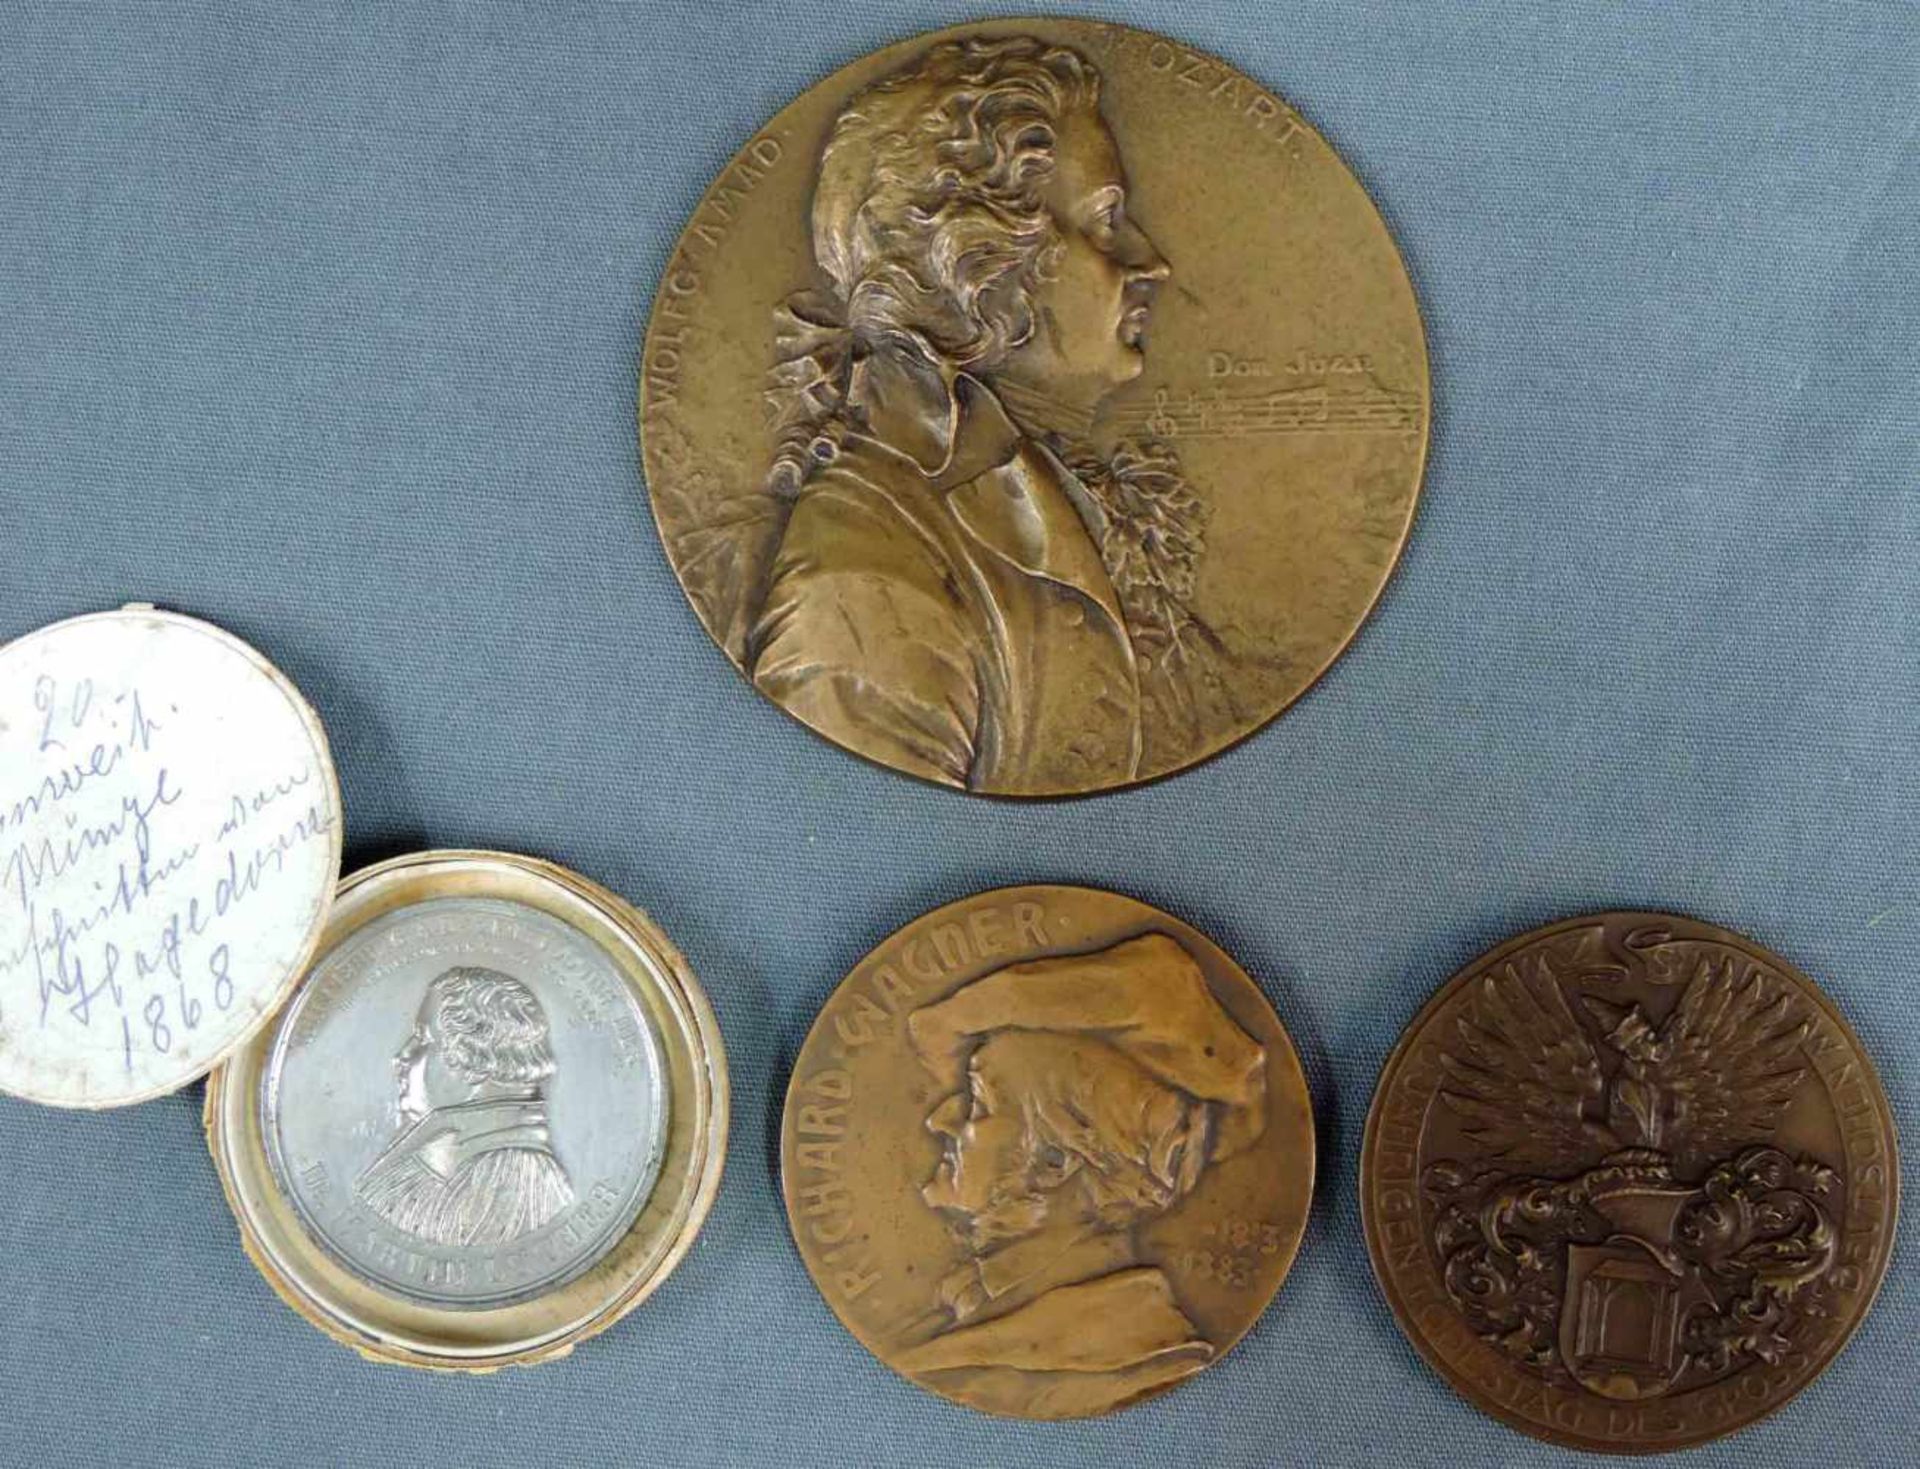 4 Medaillen. Mozart, Wagner, Dürer und Luther, Auch Bronze. 4 medals. Mozart, Wagner, Dürer and